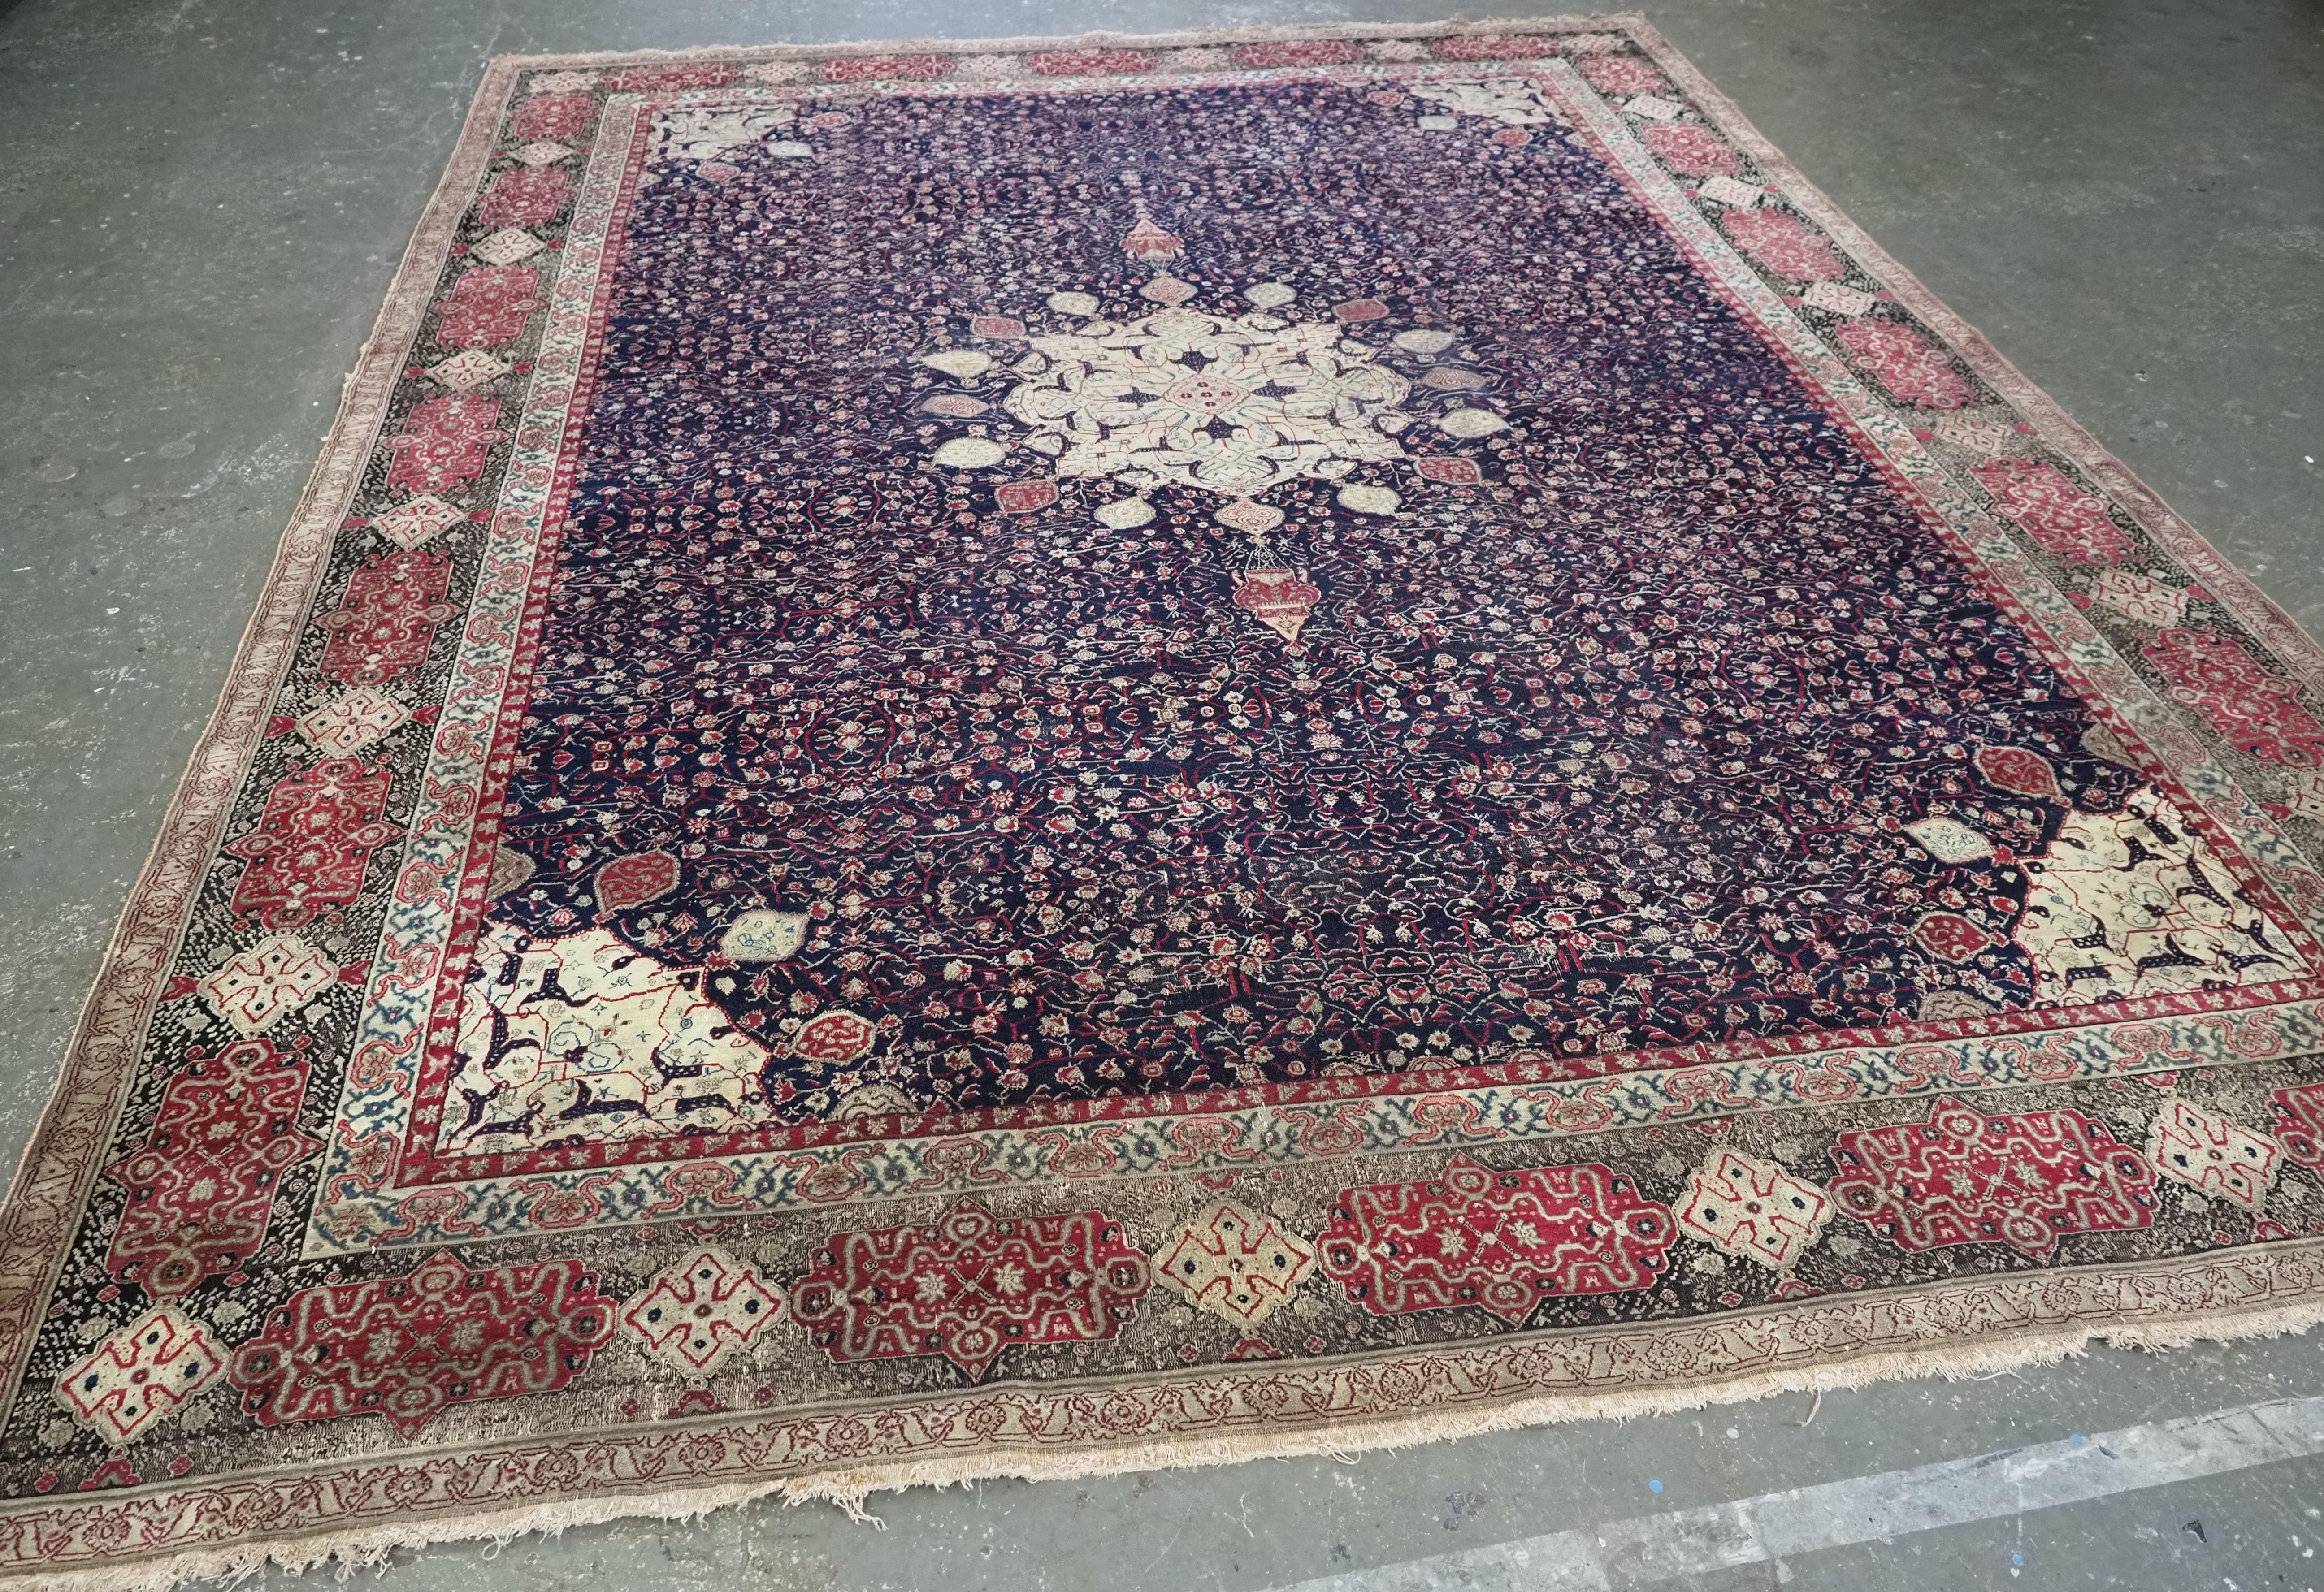 Größe: 11ft 8in x 8ft 11in (355 x 273cm).

Antiker indischer Agra-Teppich mit dem Muster 